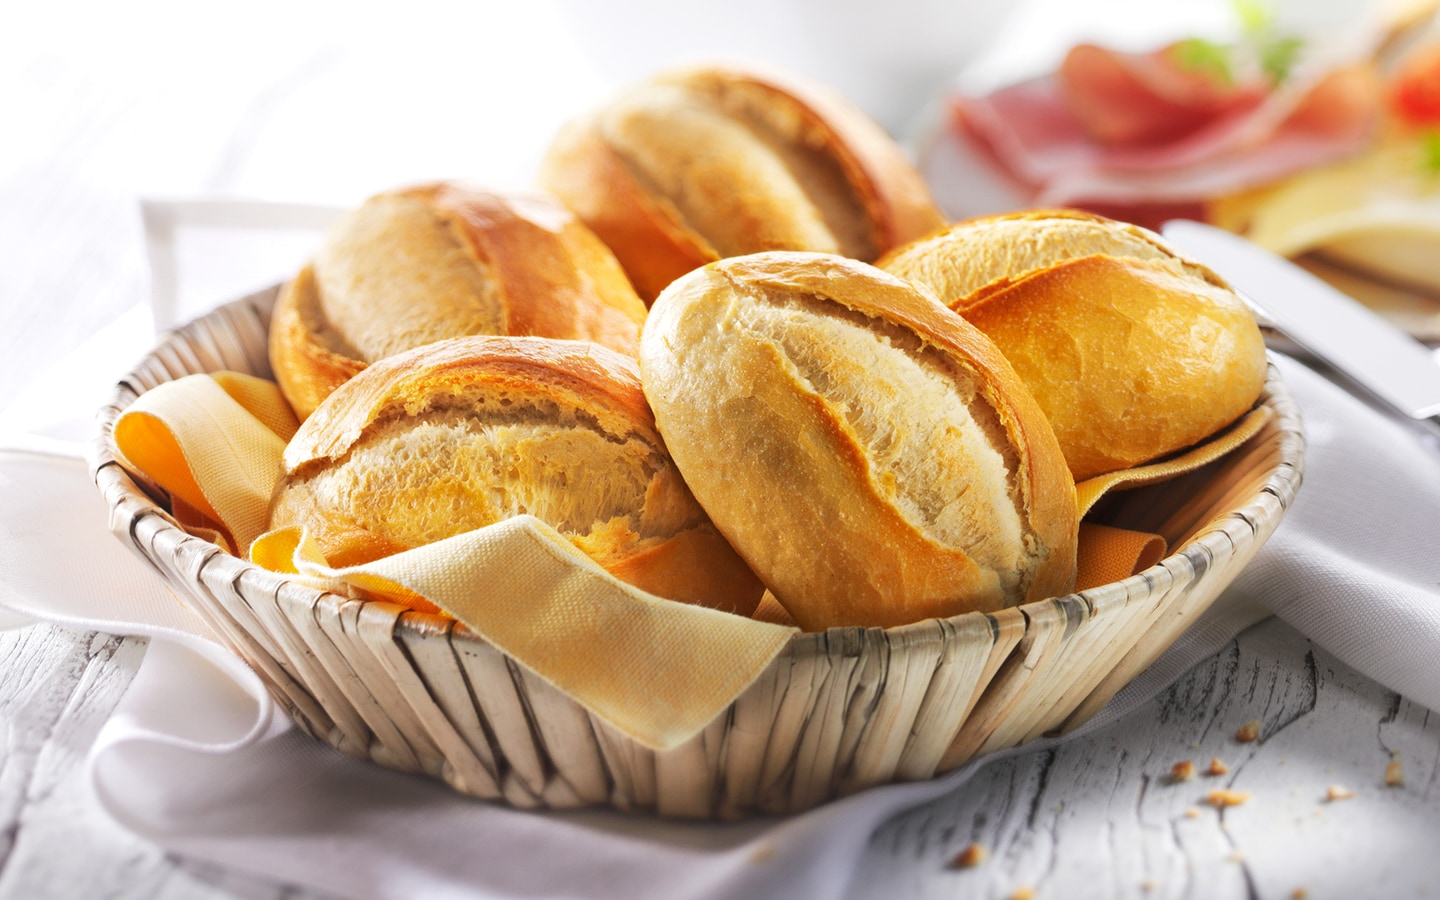 Petits pains classiques (01882) | Livraison gratuite | bofrost.fr